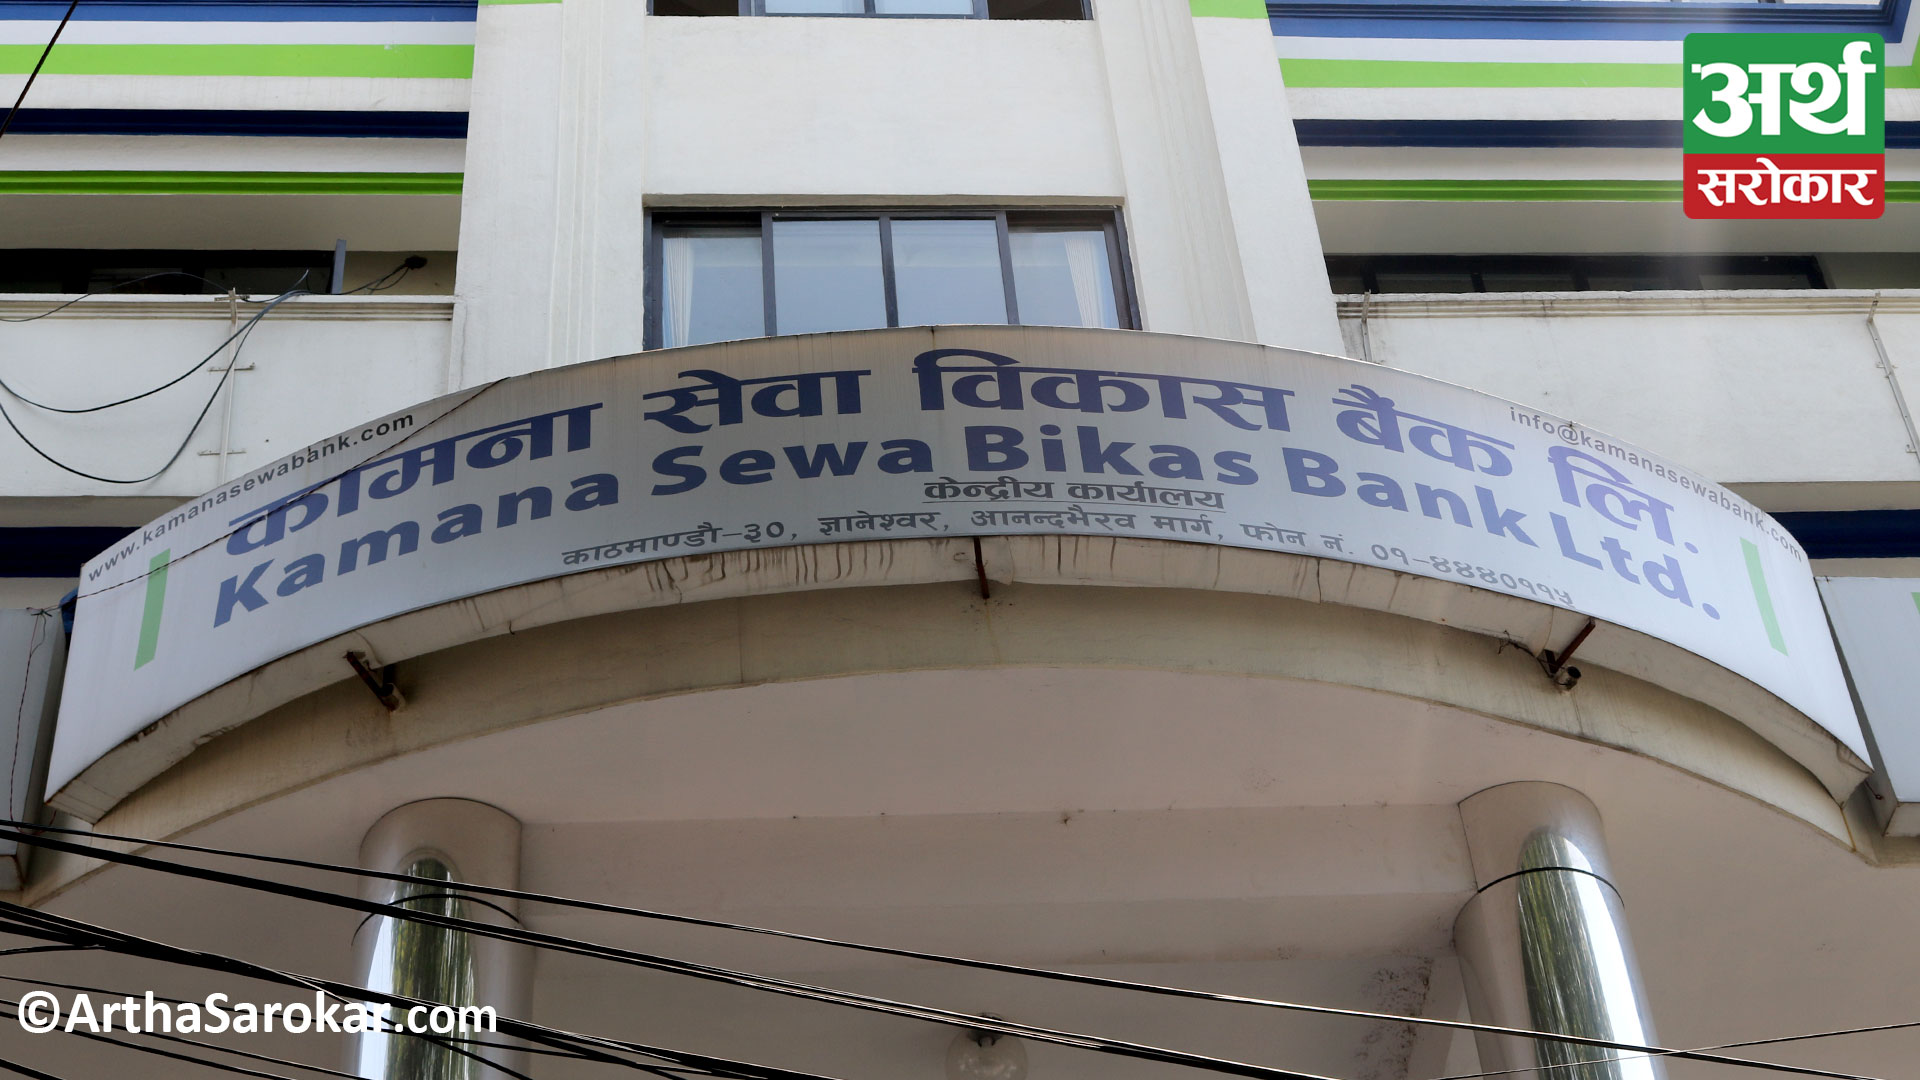 Kamana Sewa Bikas Bank urges to update KYC within 35 days